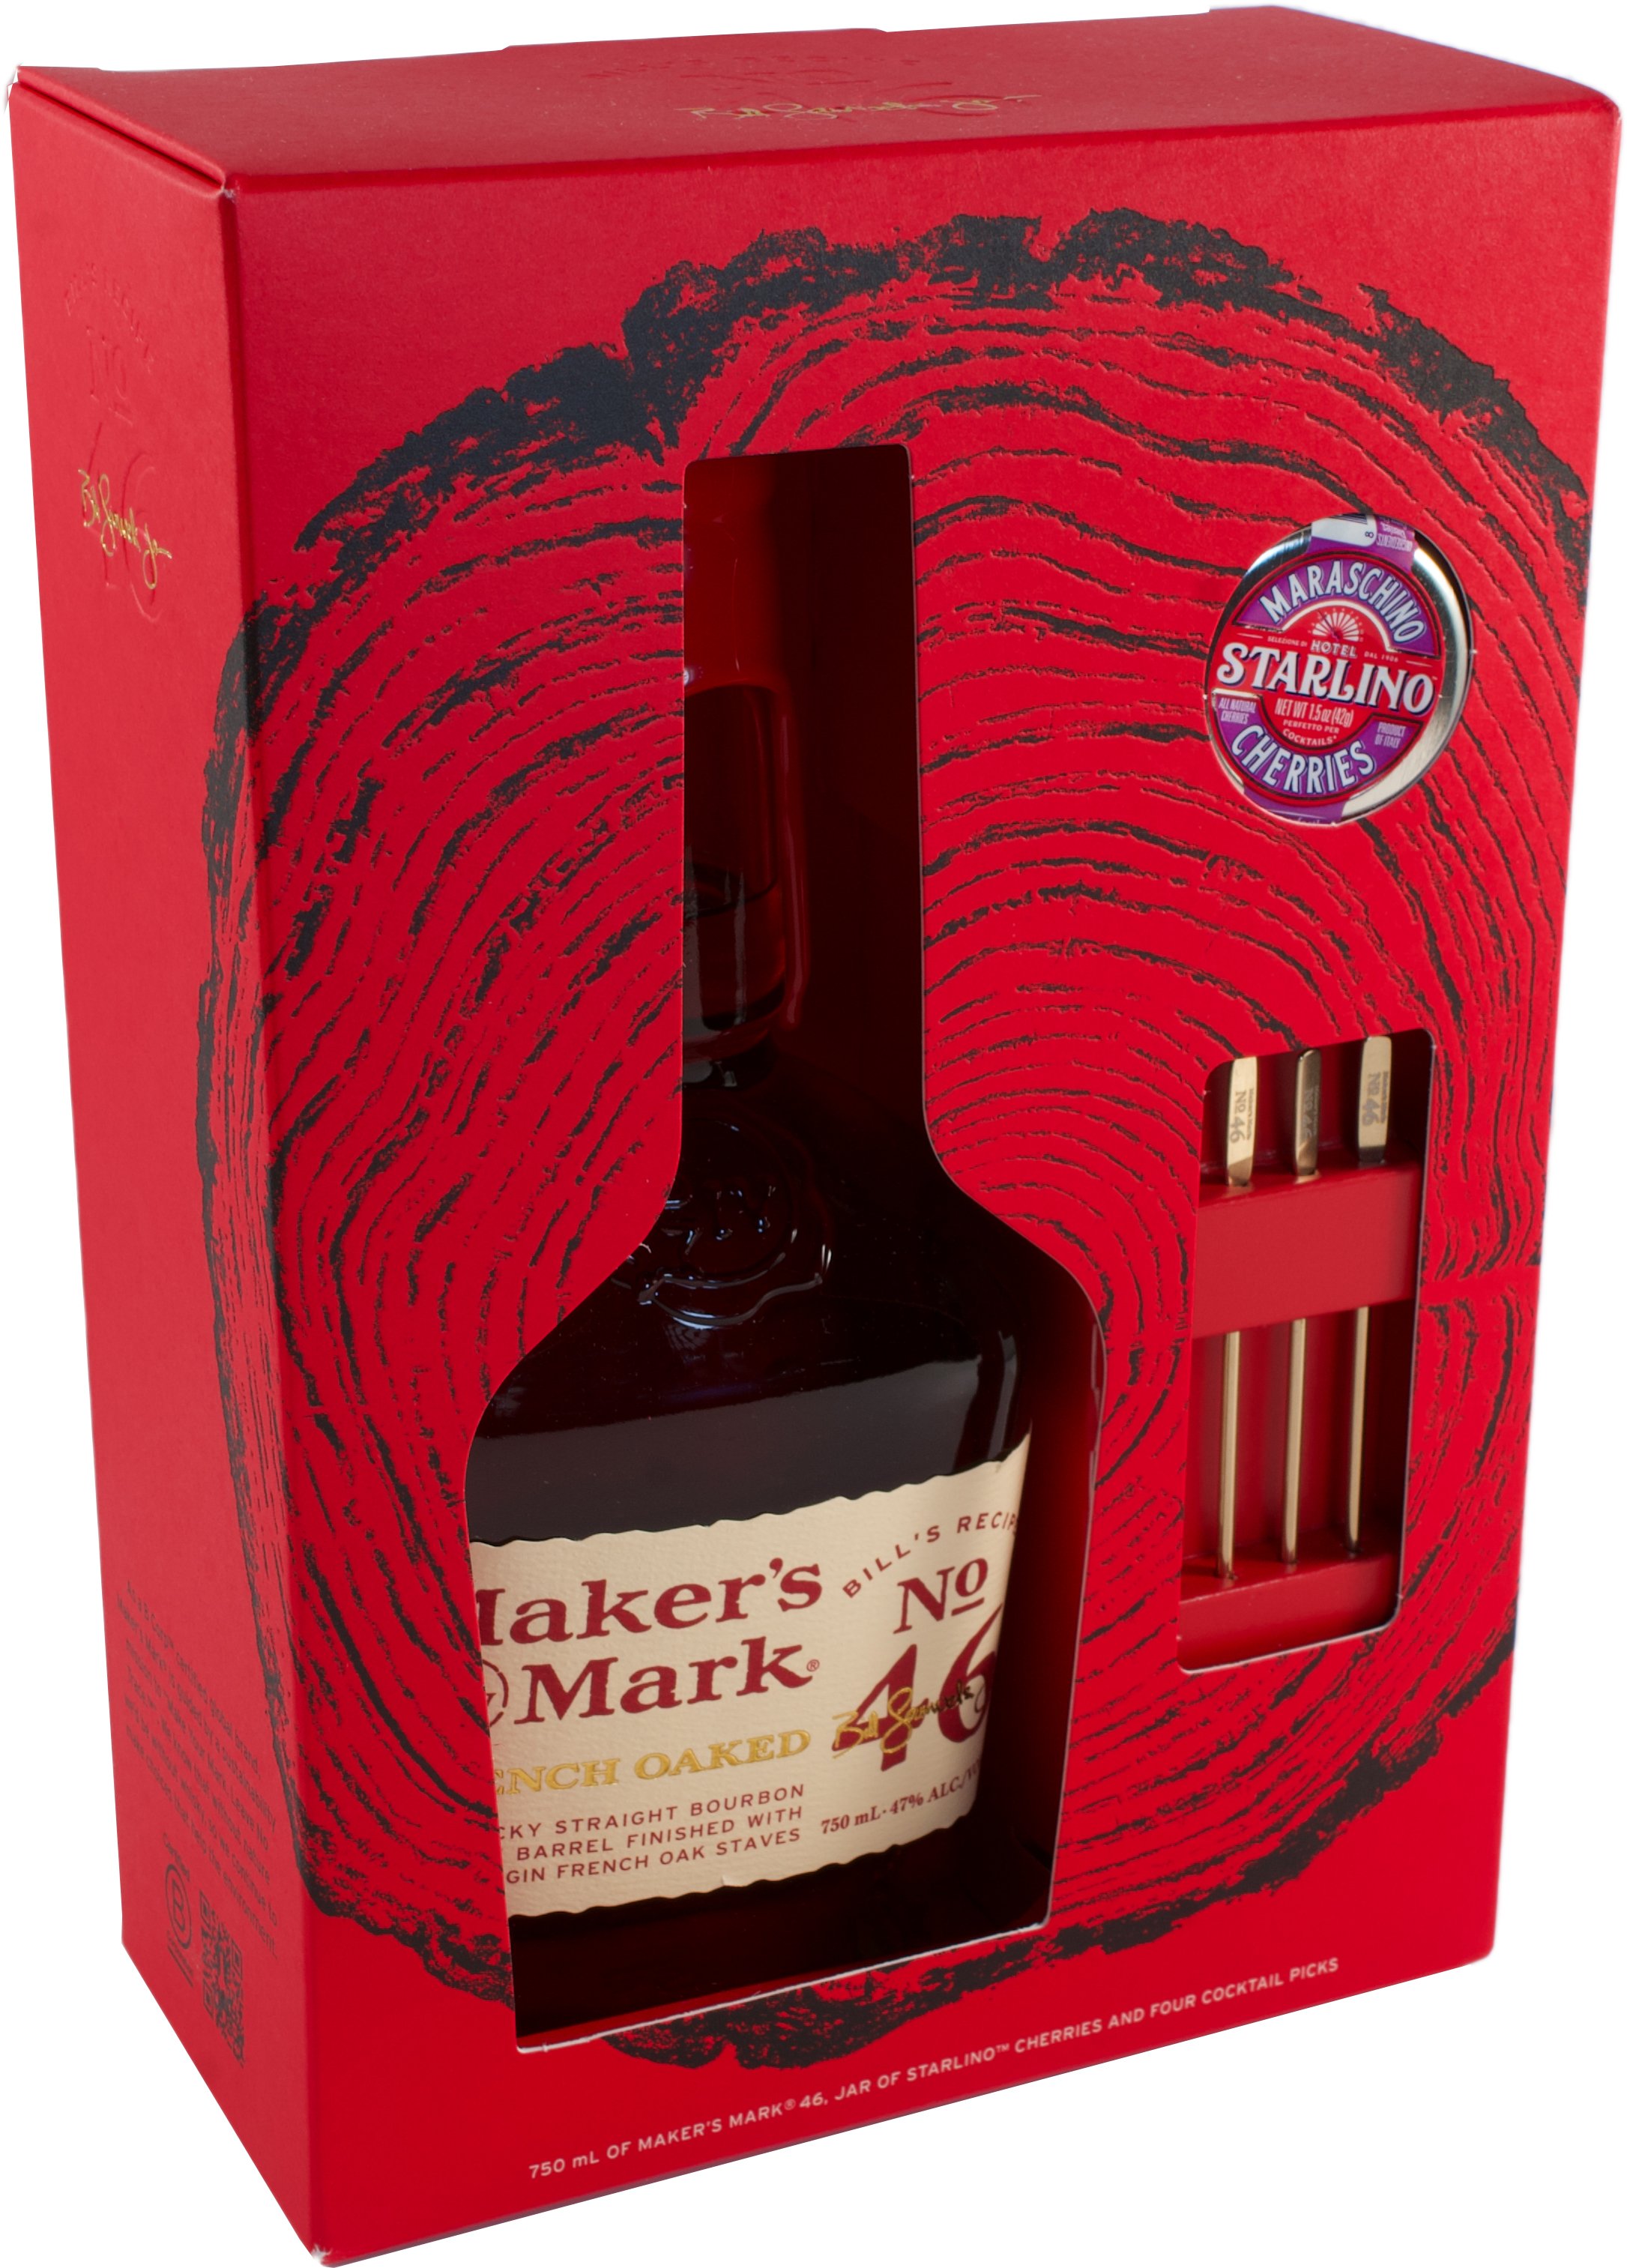 Maker's Mark Kentucky Straight Bourbon Whisky NV 750 ml.